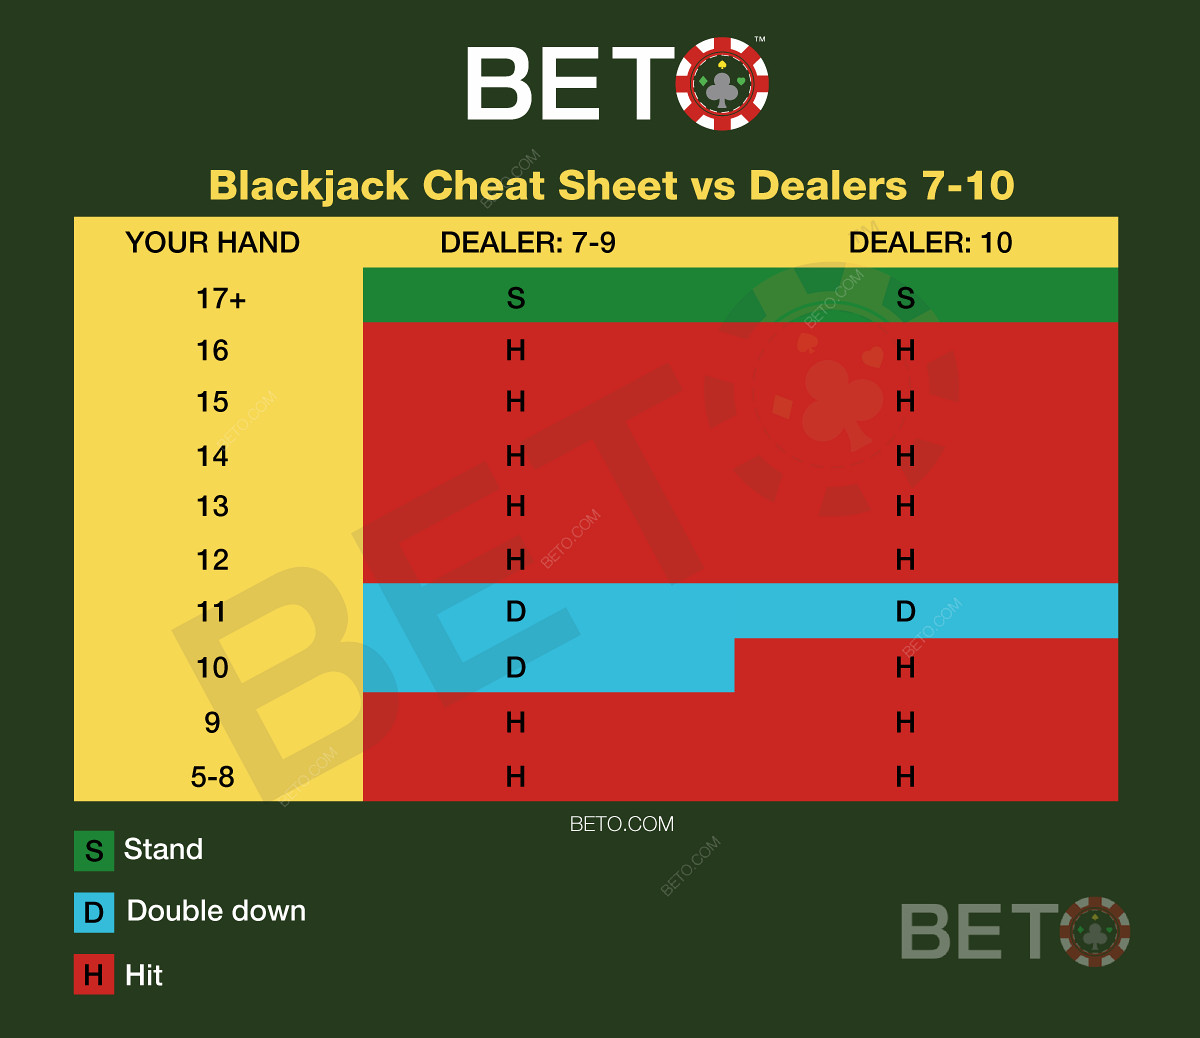 Blackjack charts vs dealer 7-10